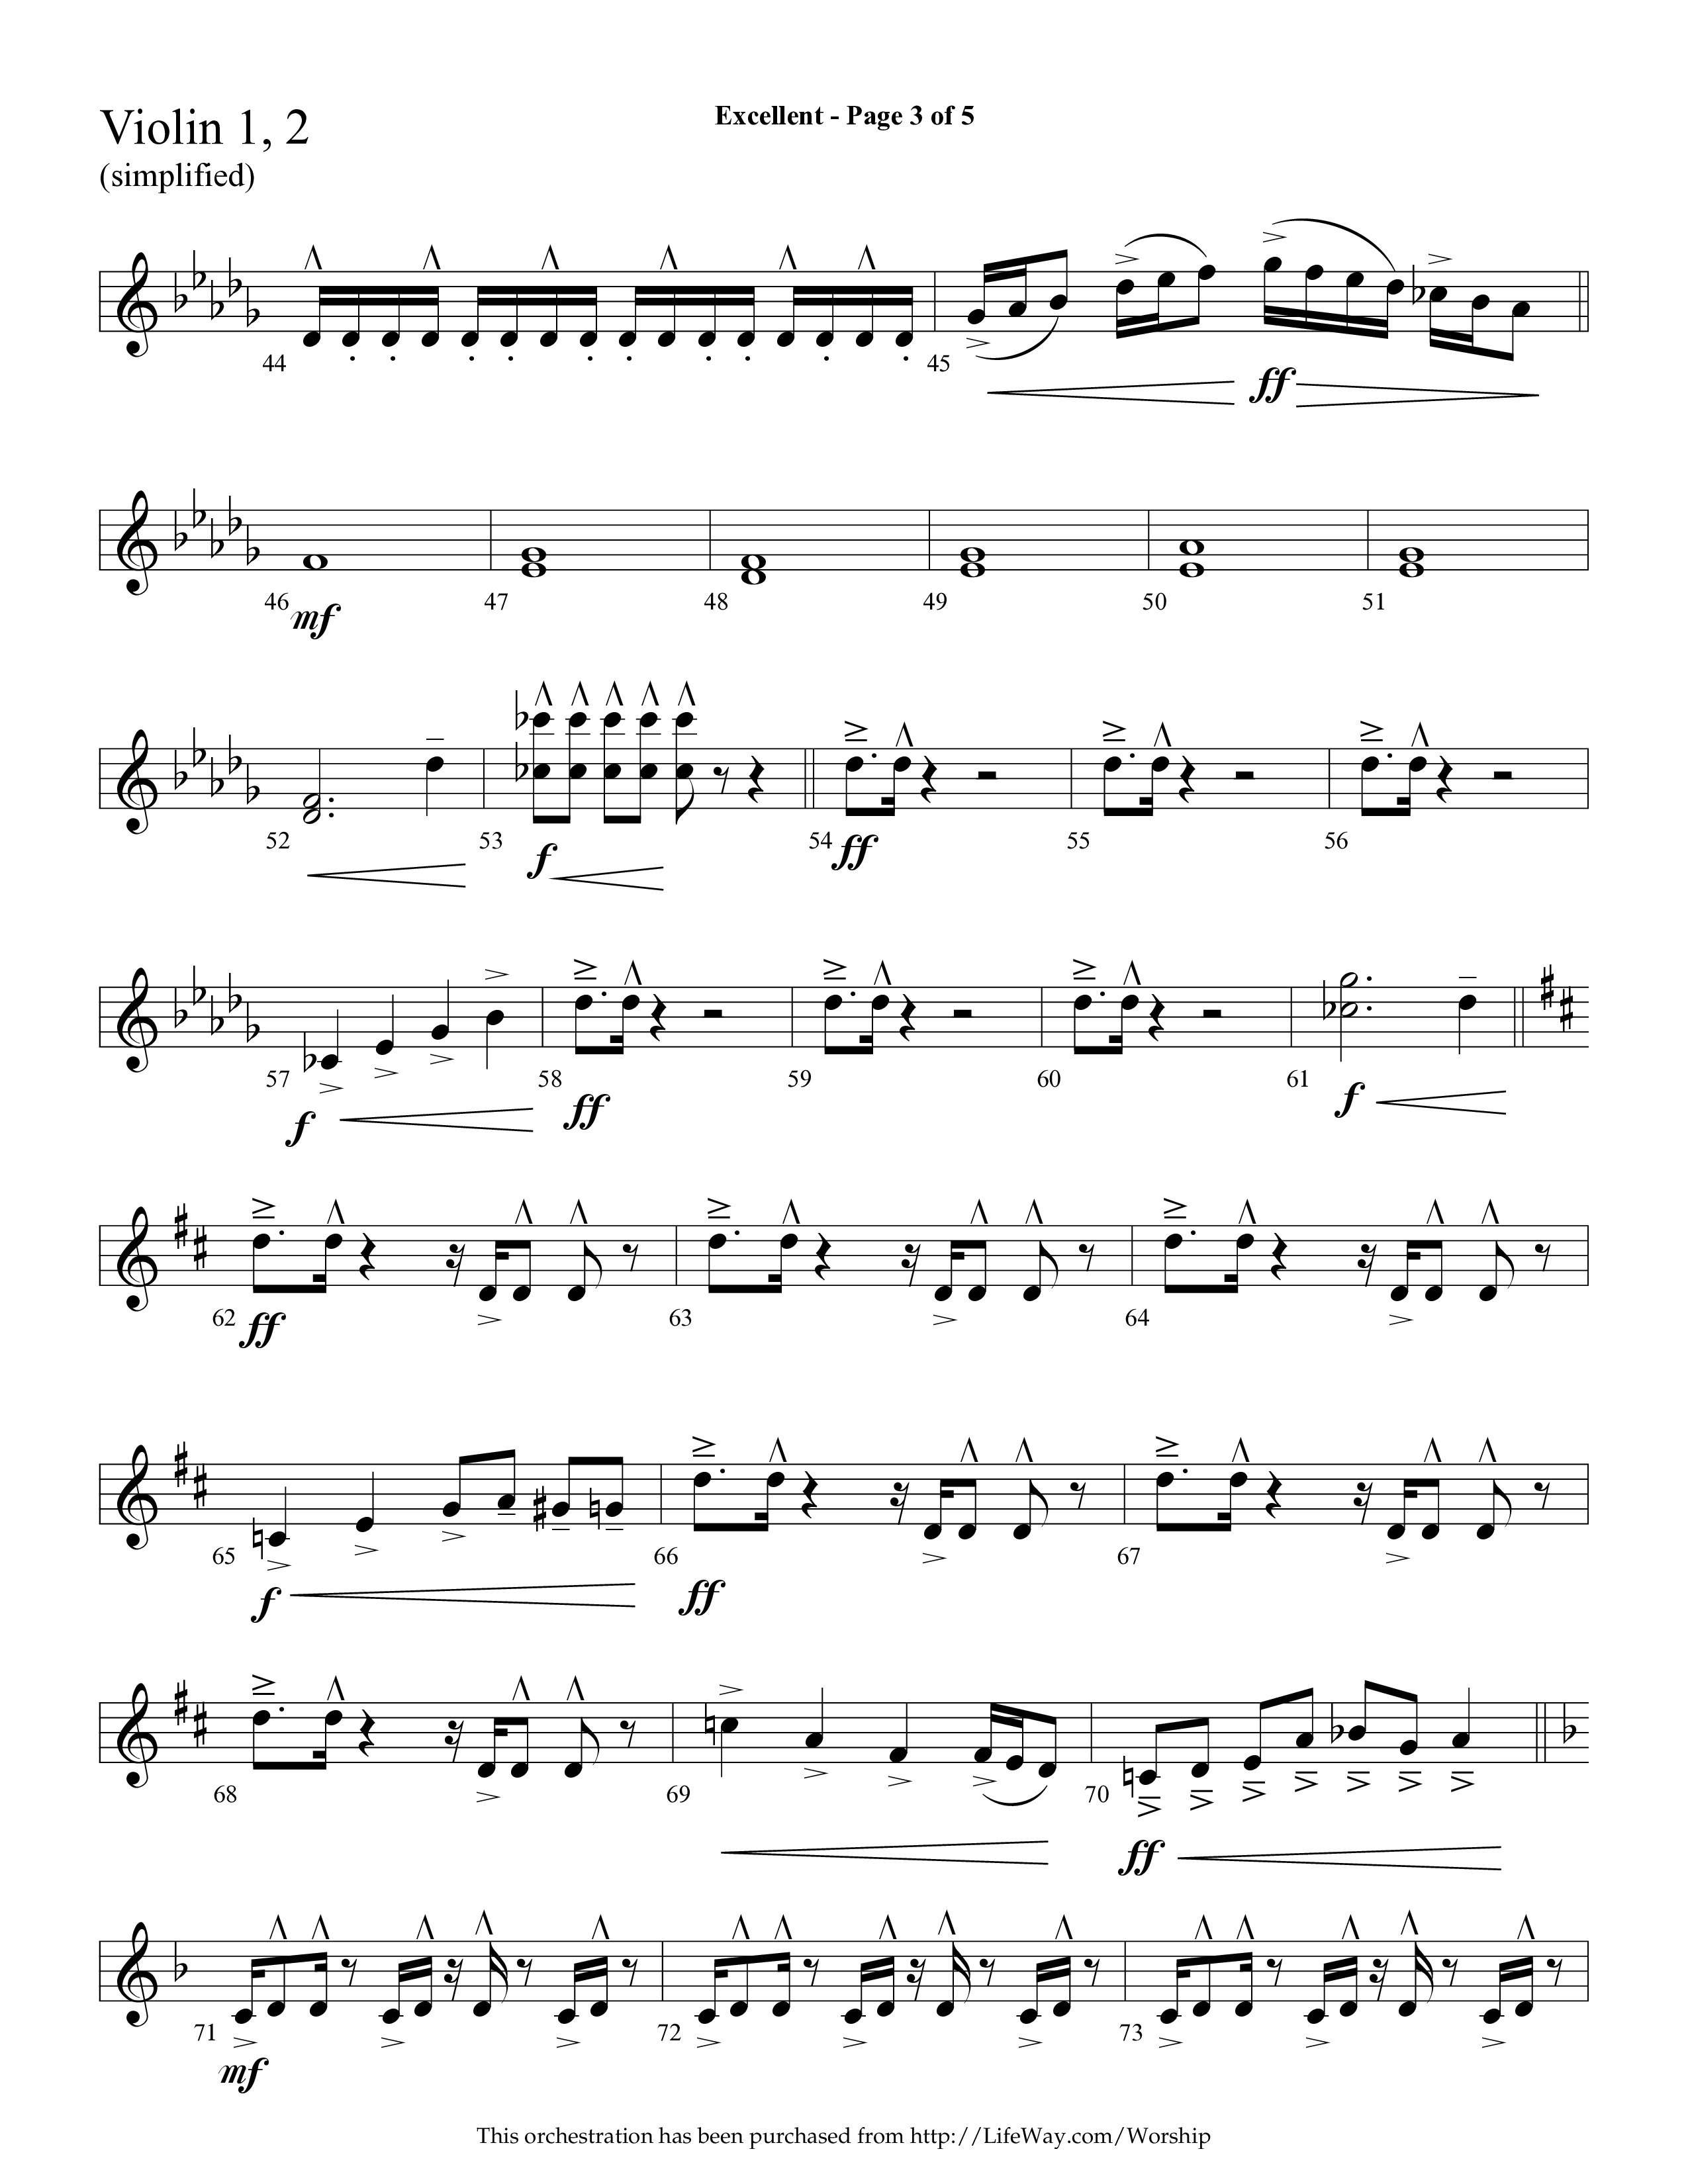 Excellent (Choral Anthem SATB) Violin 1/2 (Lifeway Choral / Arr. Cliff Duren)